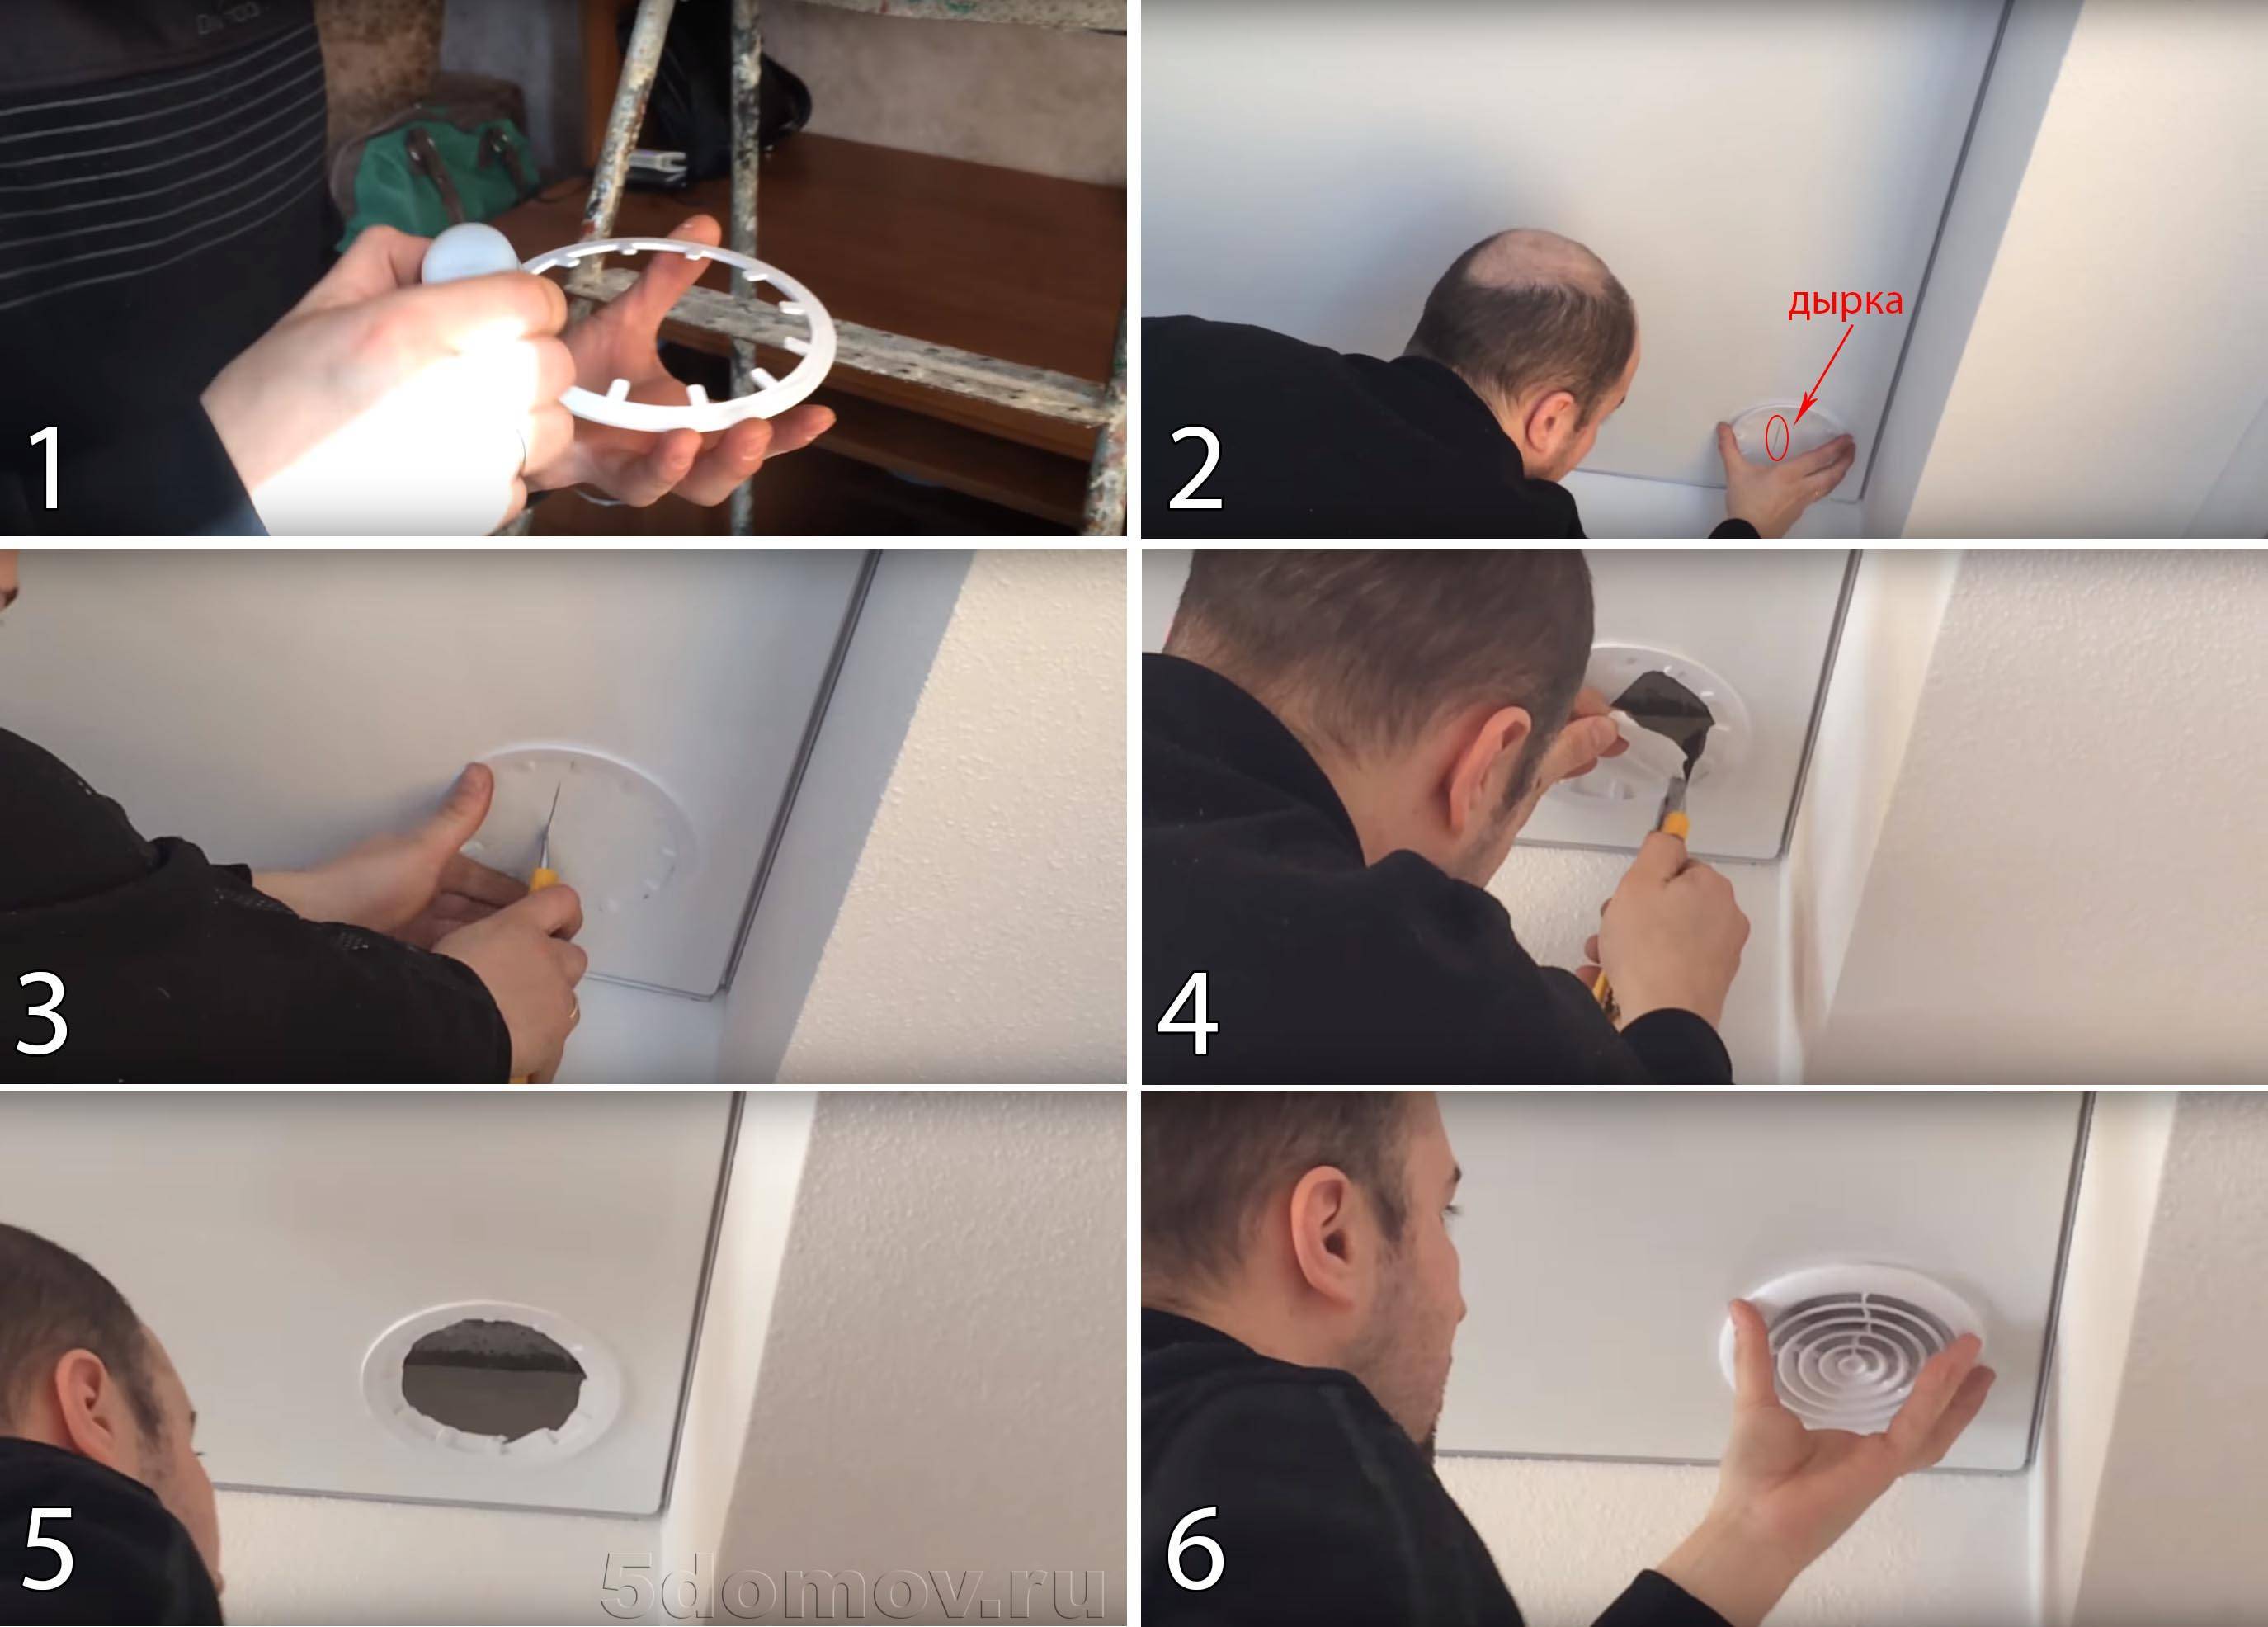 Как заделать дырку в натяжном потолке и заклеить: что делать с отверстием и ремонт самостоятельно